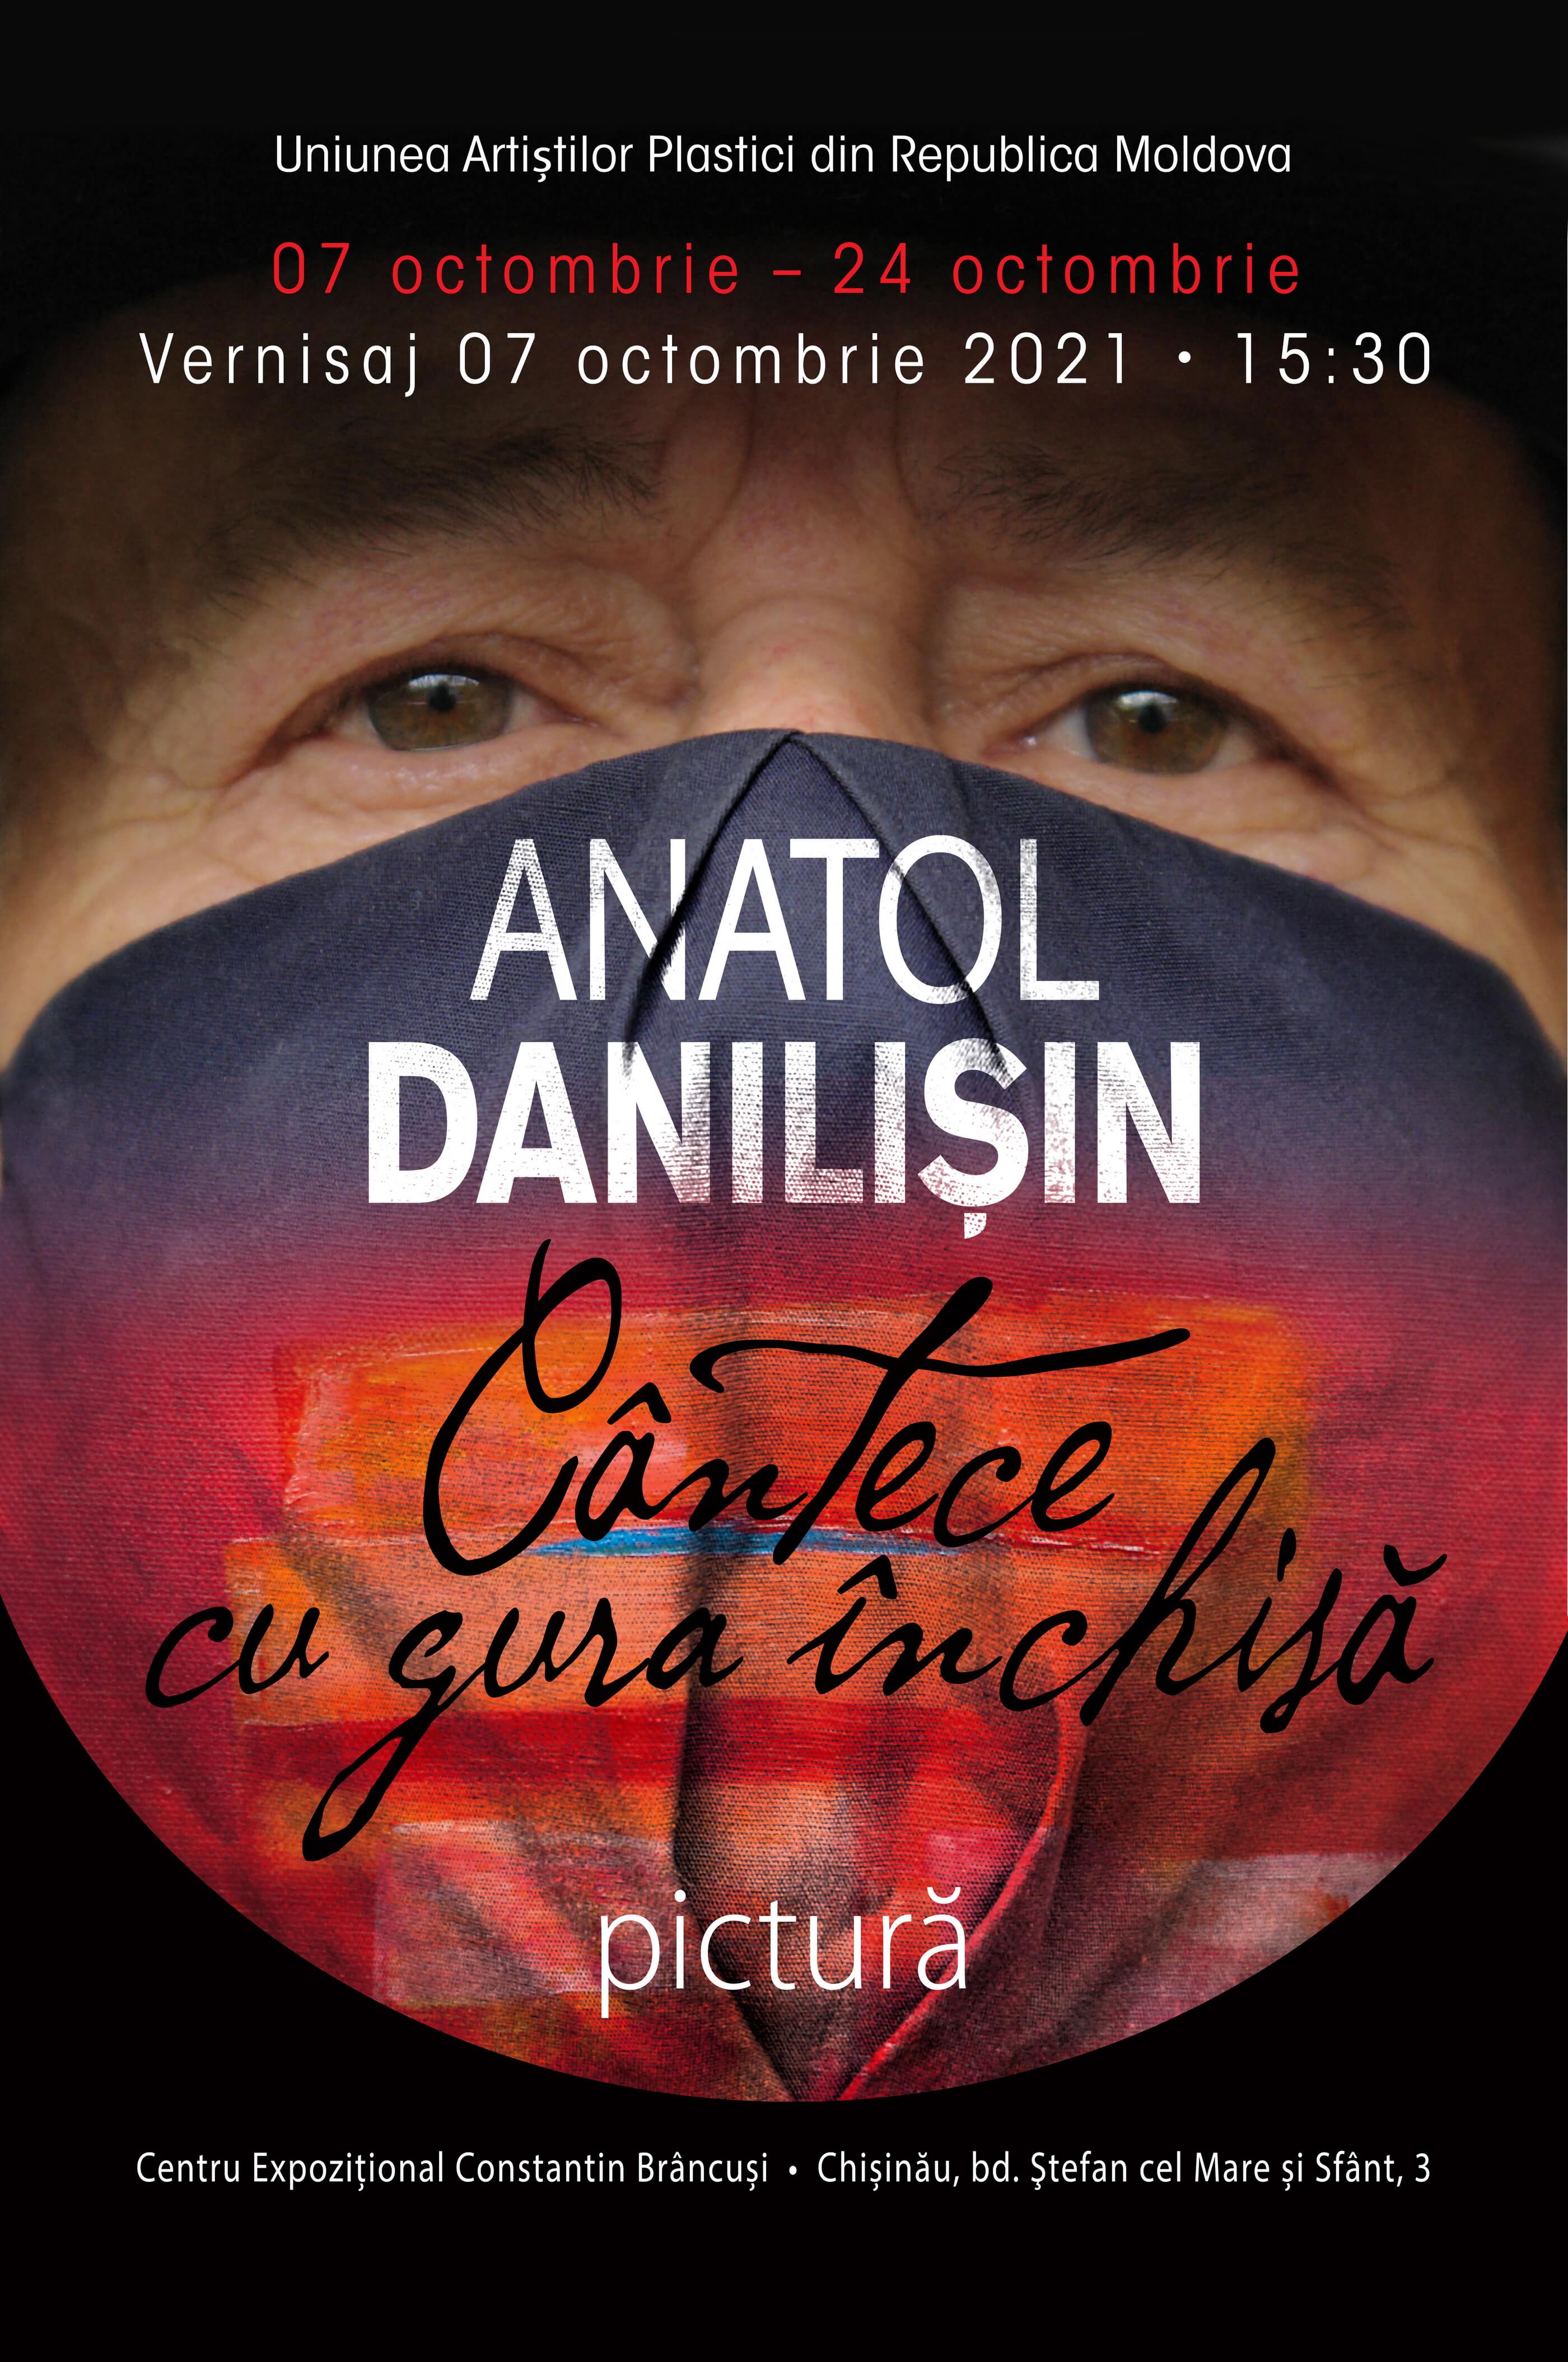 Anatol Danilişen - expoziţie de Pictură